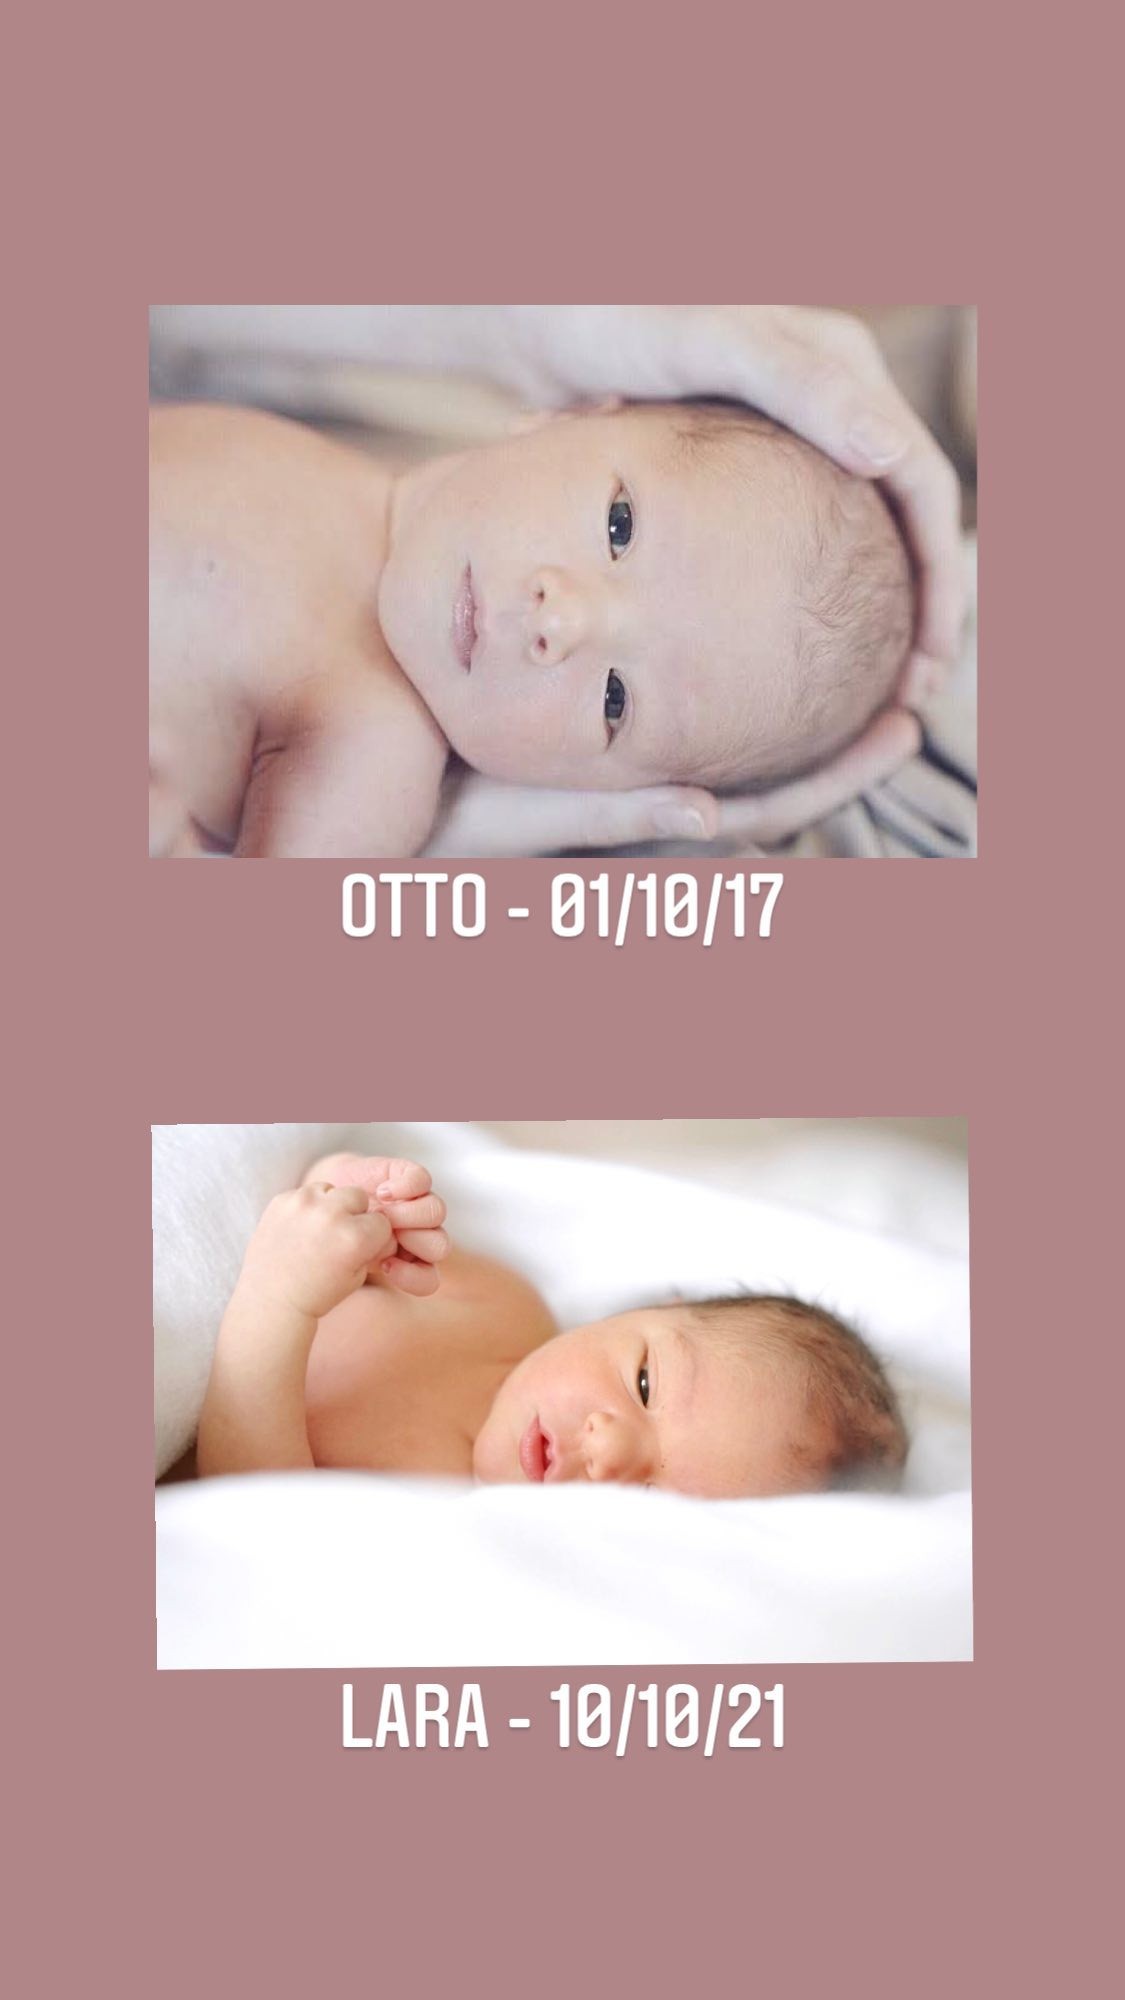 Otto e Lara, filhos de Mônica Benini e Junior Lima (Foto: Reprodução/Instagram)